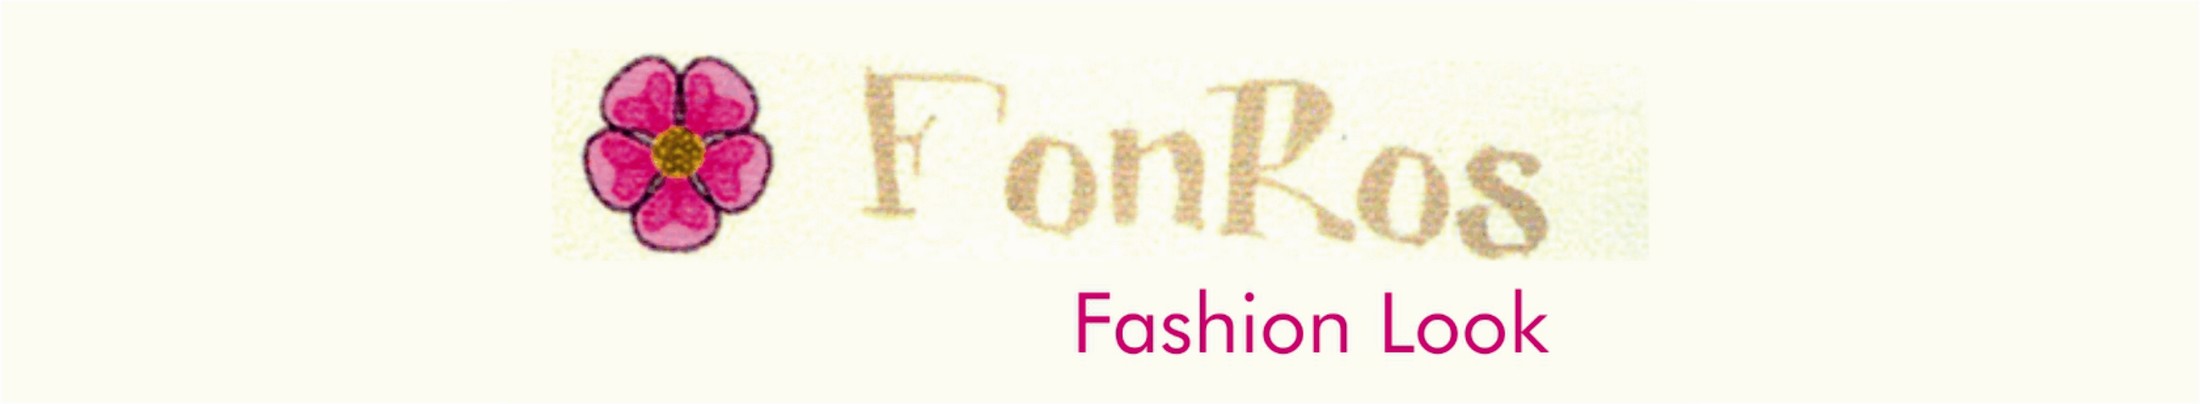 fonros fashion